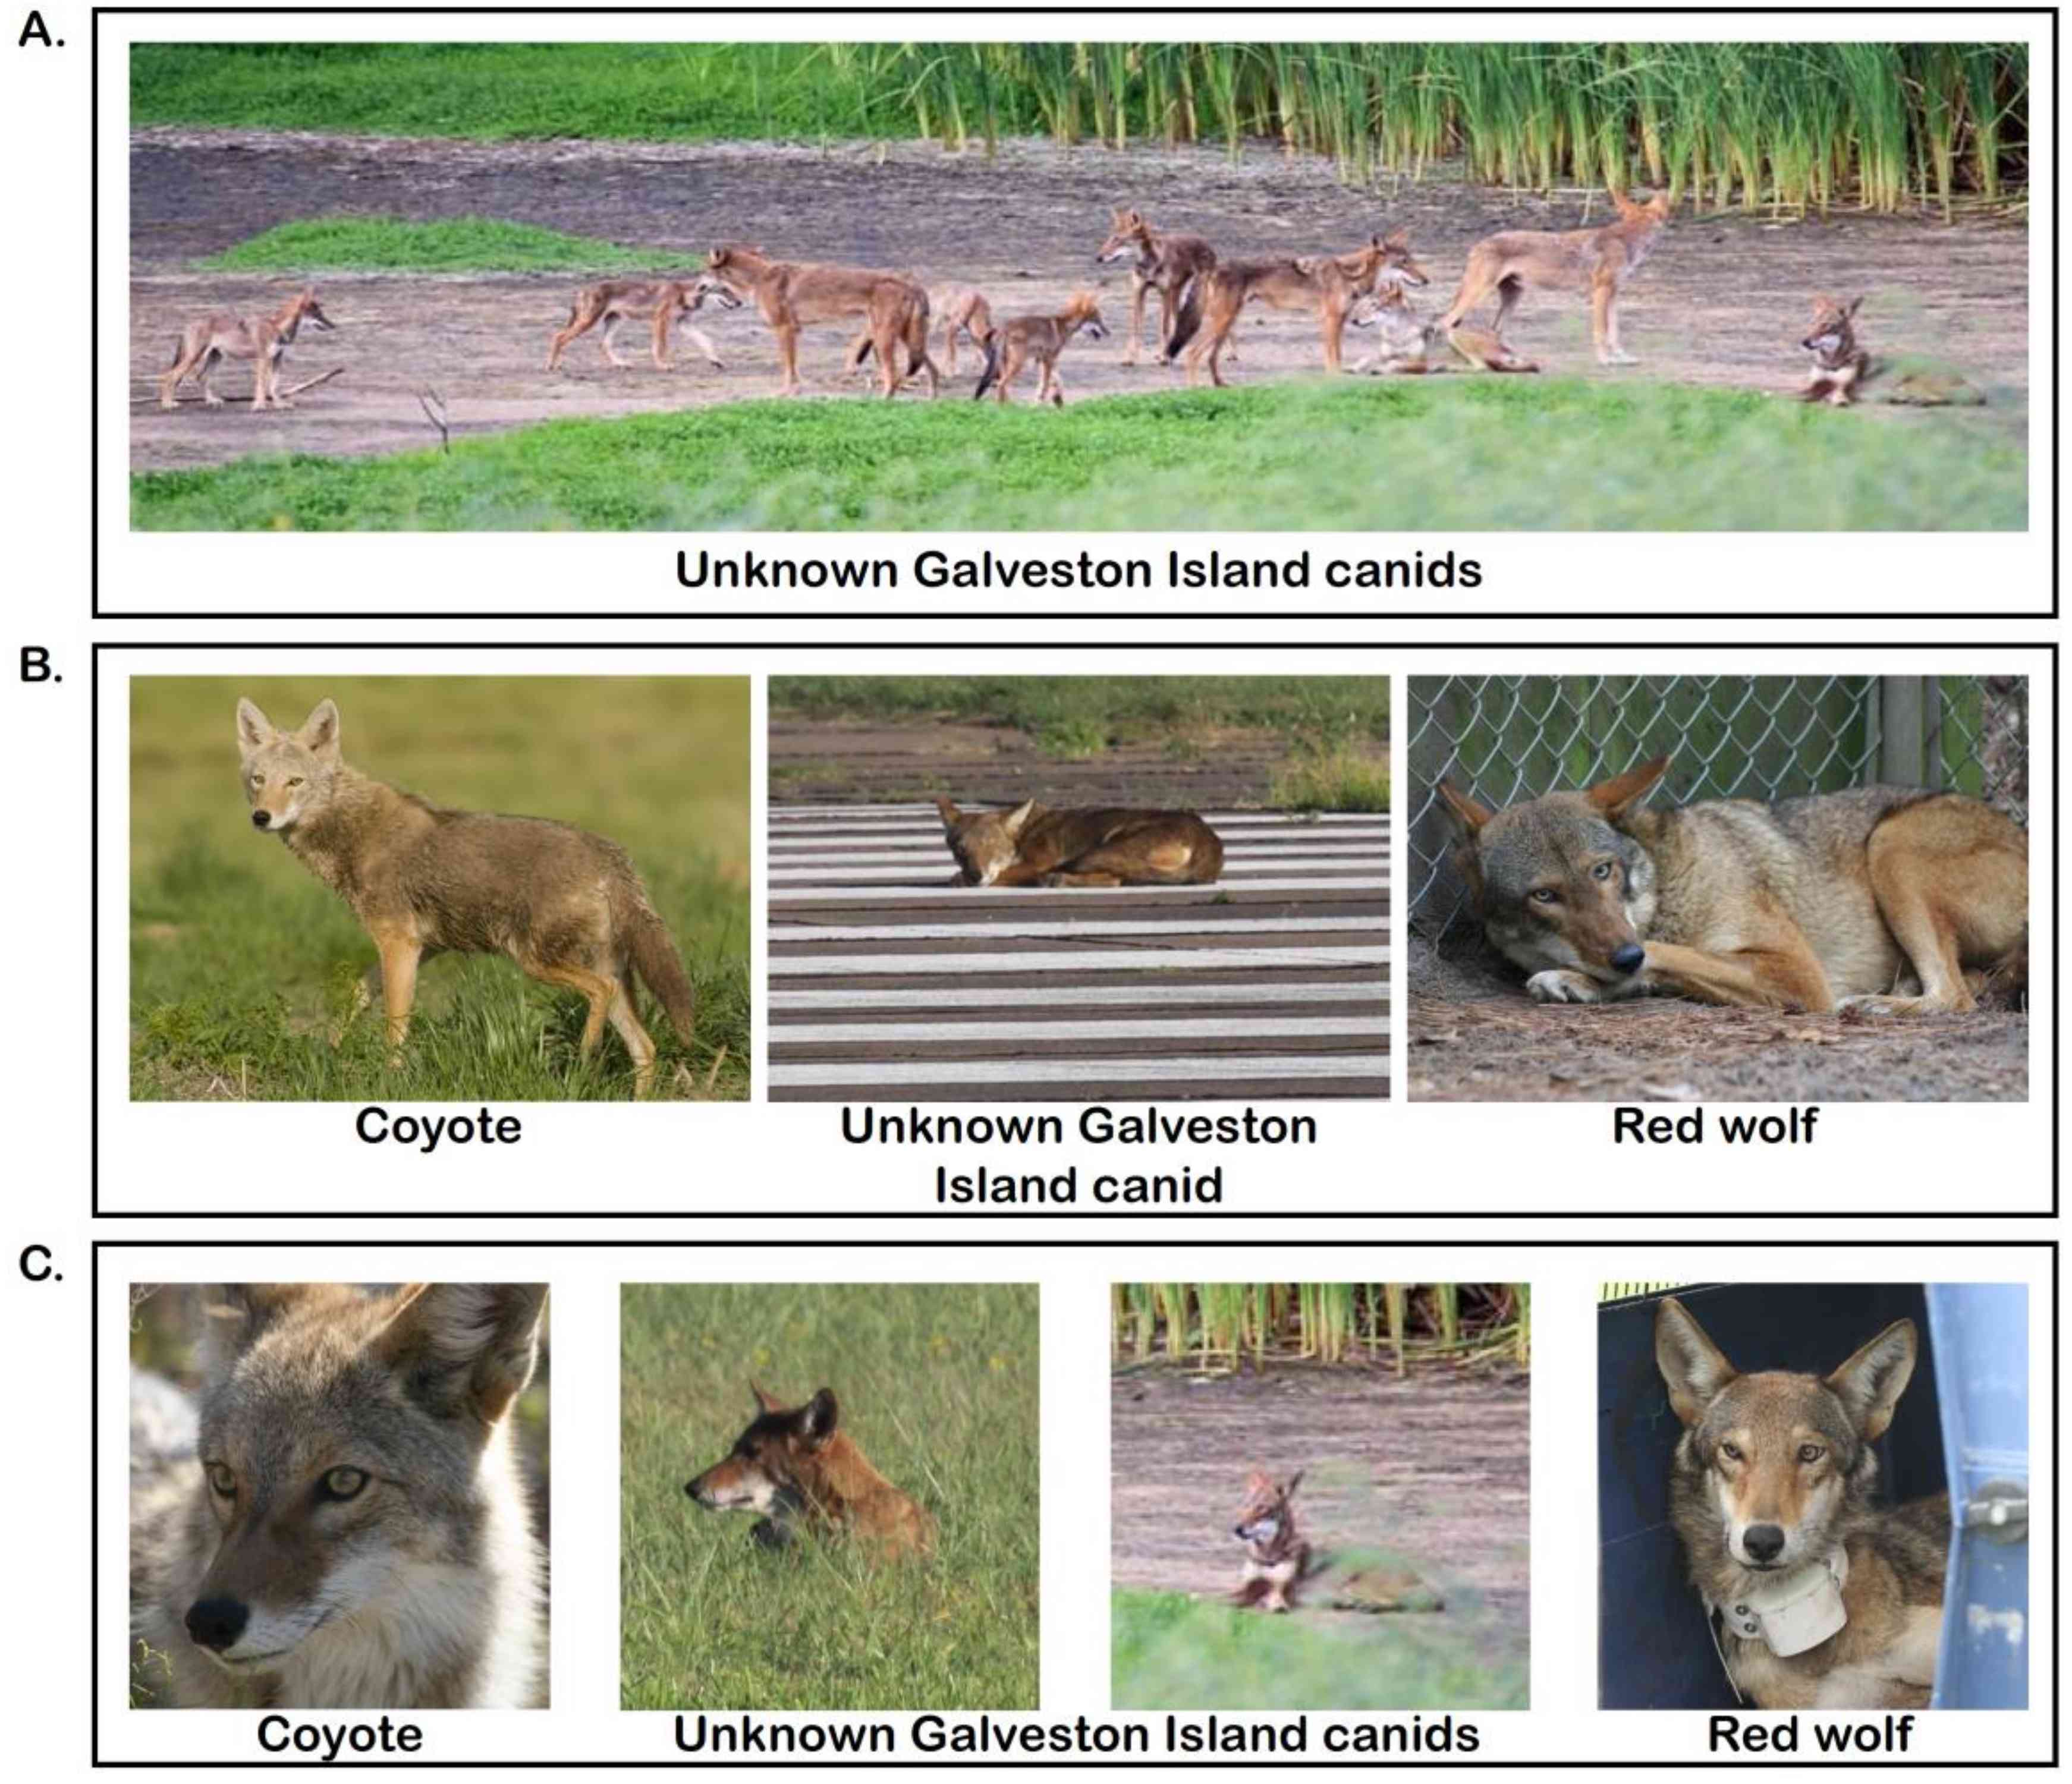 郊狼、红狼和加尔维斯顿岛犬科动物的照片比较“width=